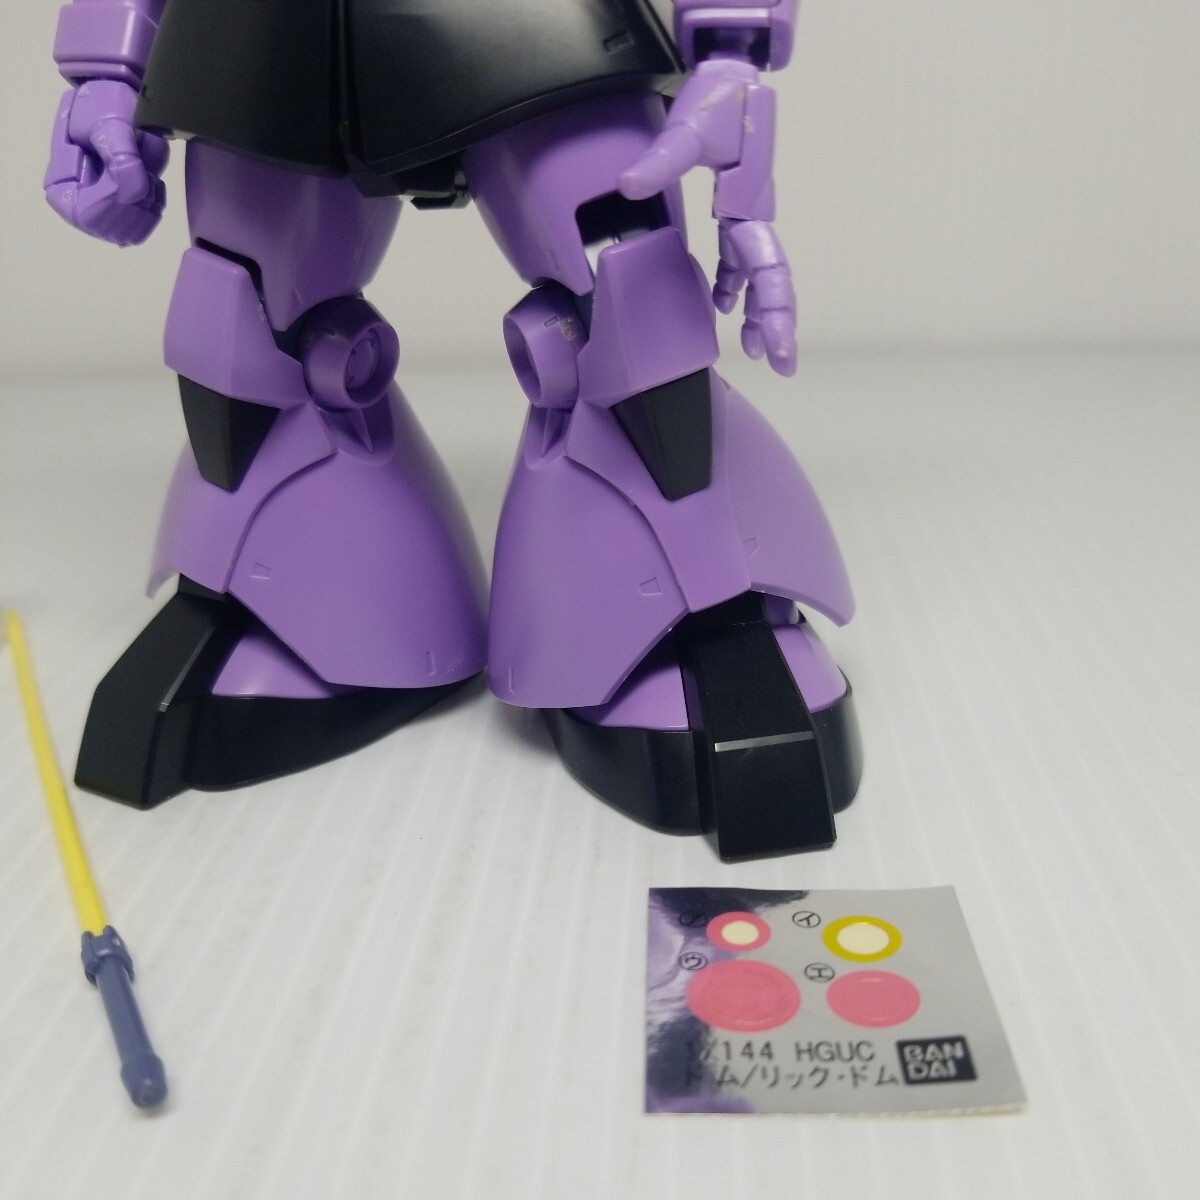 oka-100g 5/8 HGdom1 Gundam включение в покупку возможно gun pra Junk 